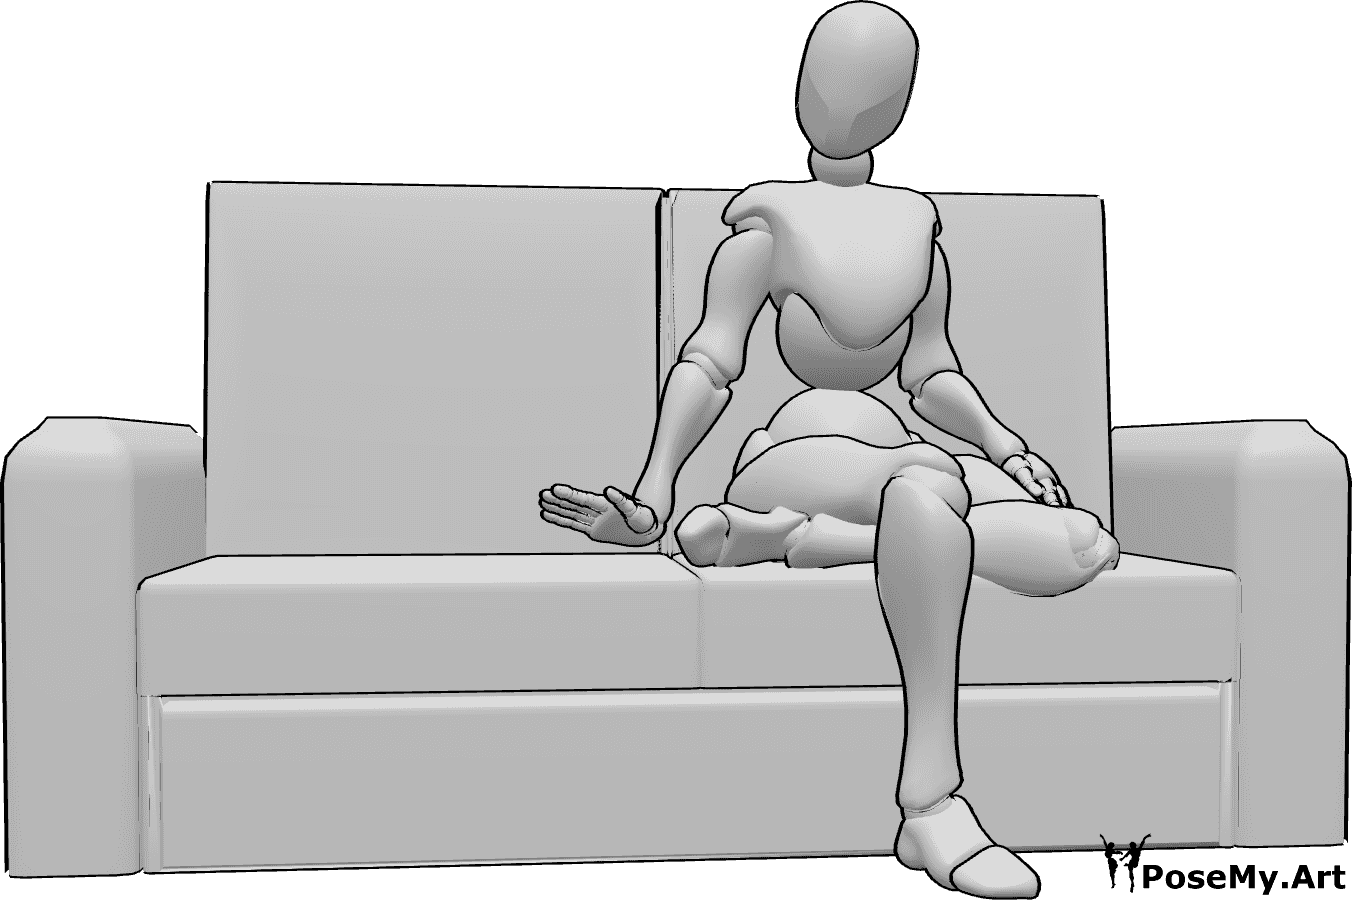 Référence des poses- Femme invitant à la pose assise - La femme est assise sur le canapé, les jambes croisées, et invite à s'asseoir.